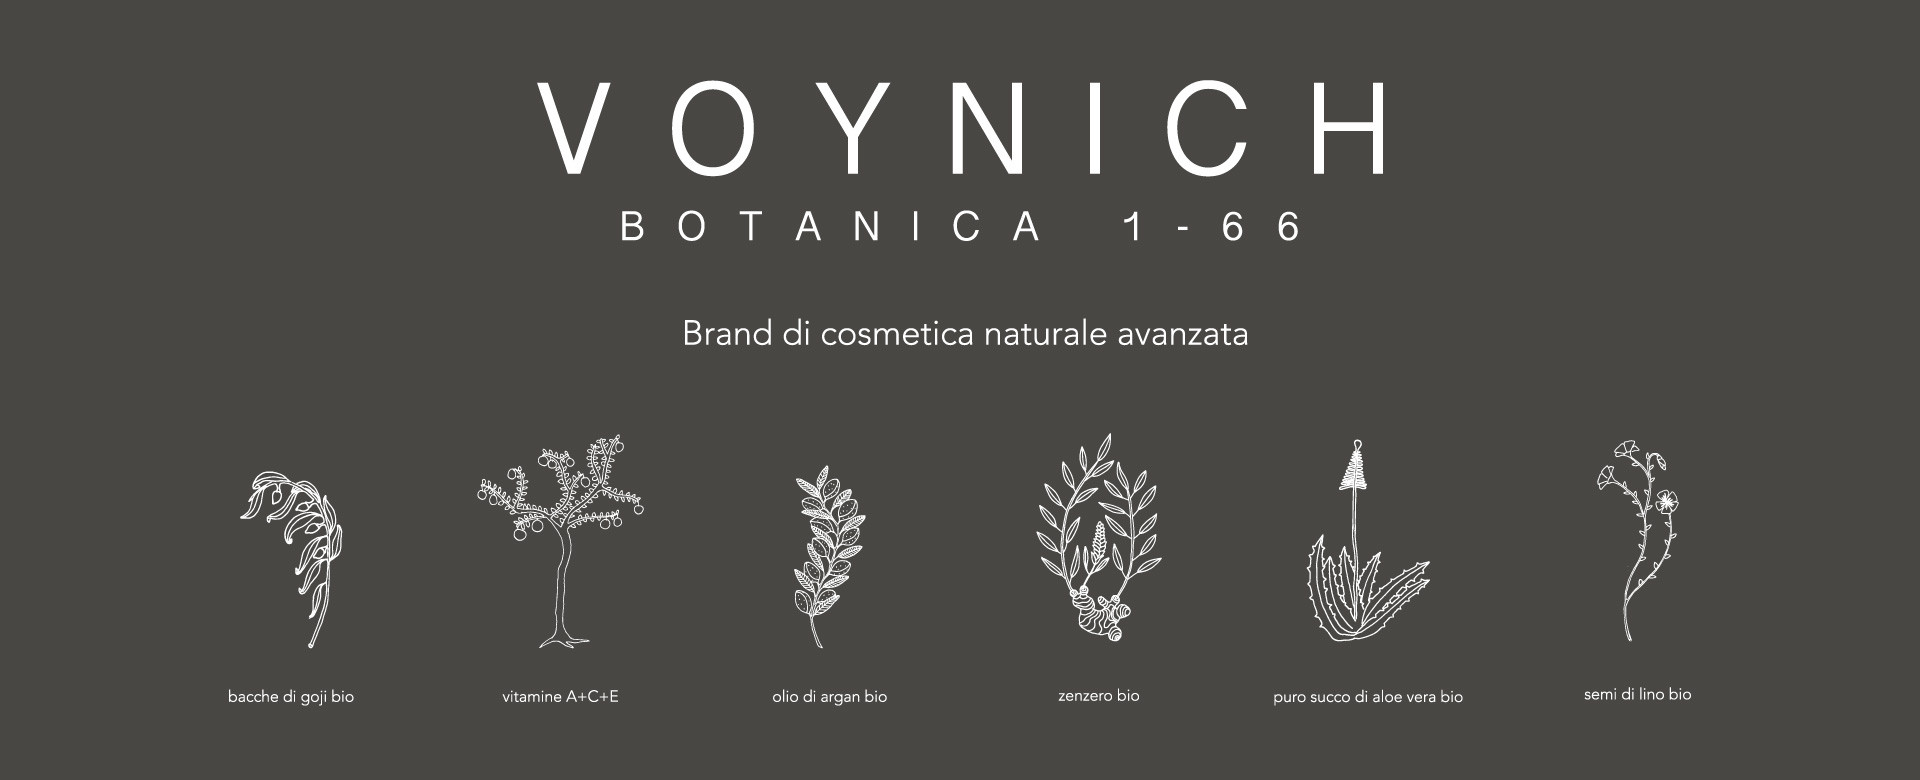 Voynich, il brand di cosmetica naturale avanzata in esclusiva solo da Pinalli